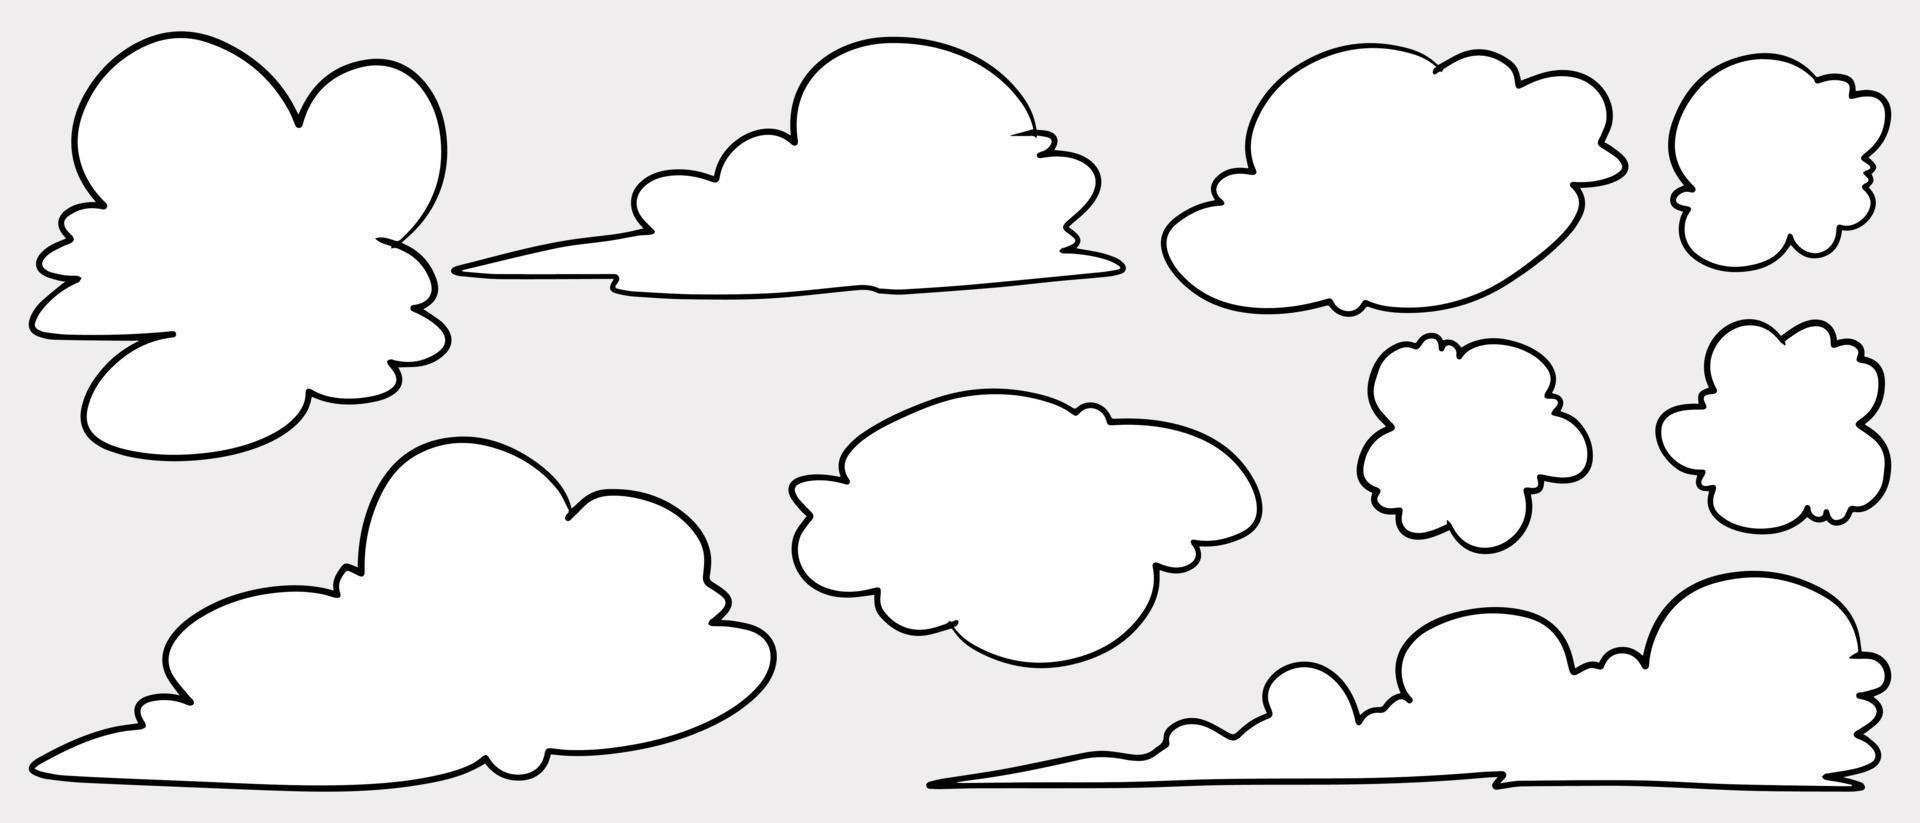 estilo de desenho doodle de mão desenhada nuvens cartoon ilustração vetorial para design de conceito. vetor